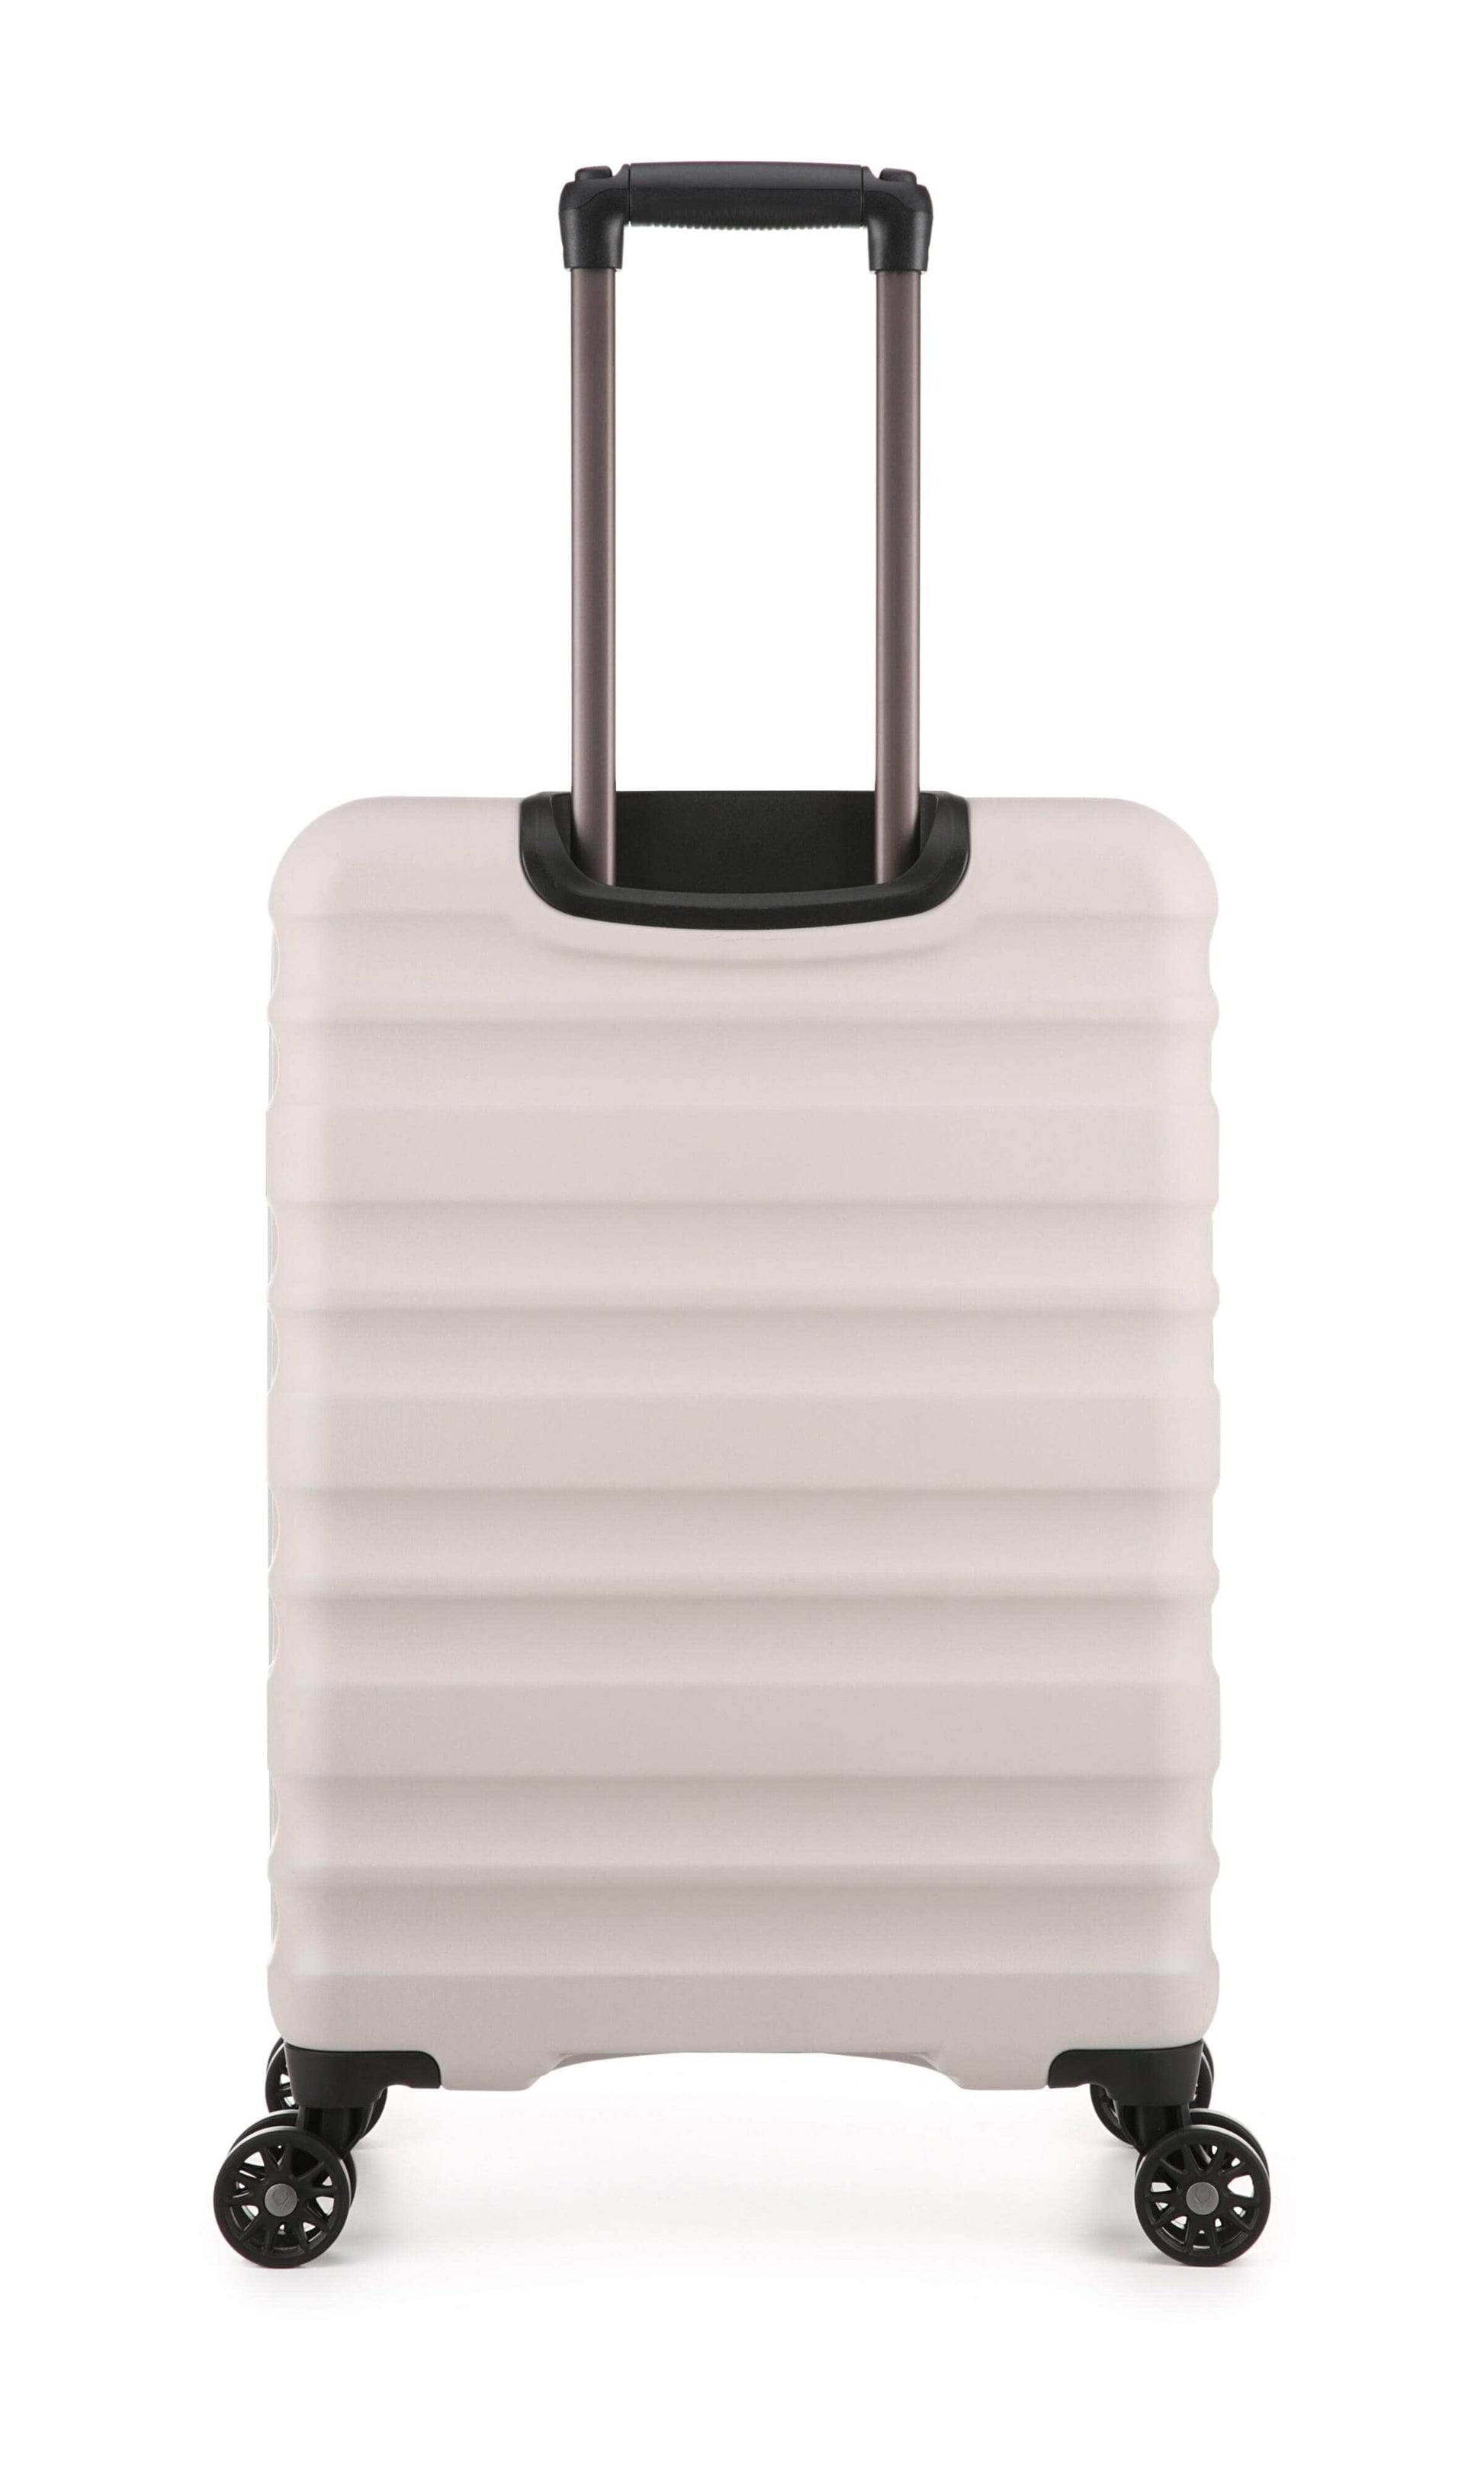 Antler Luggage -  Clifton medium in taupe - Hard Suitcases Clifton Medium Suitcase Taupe | Hard Suitcase | Antler UK